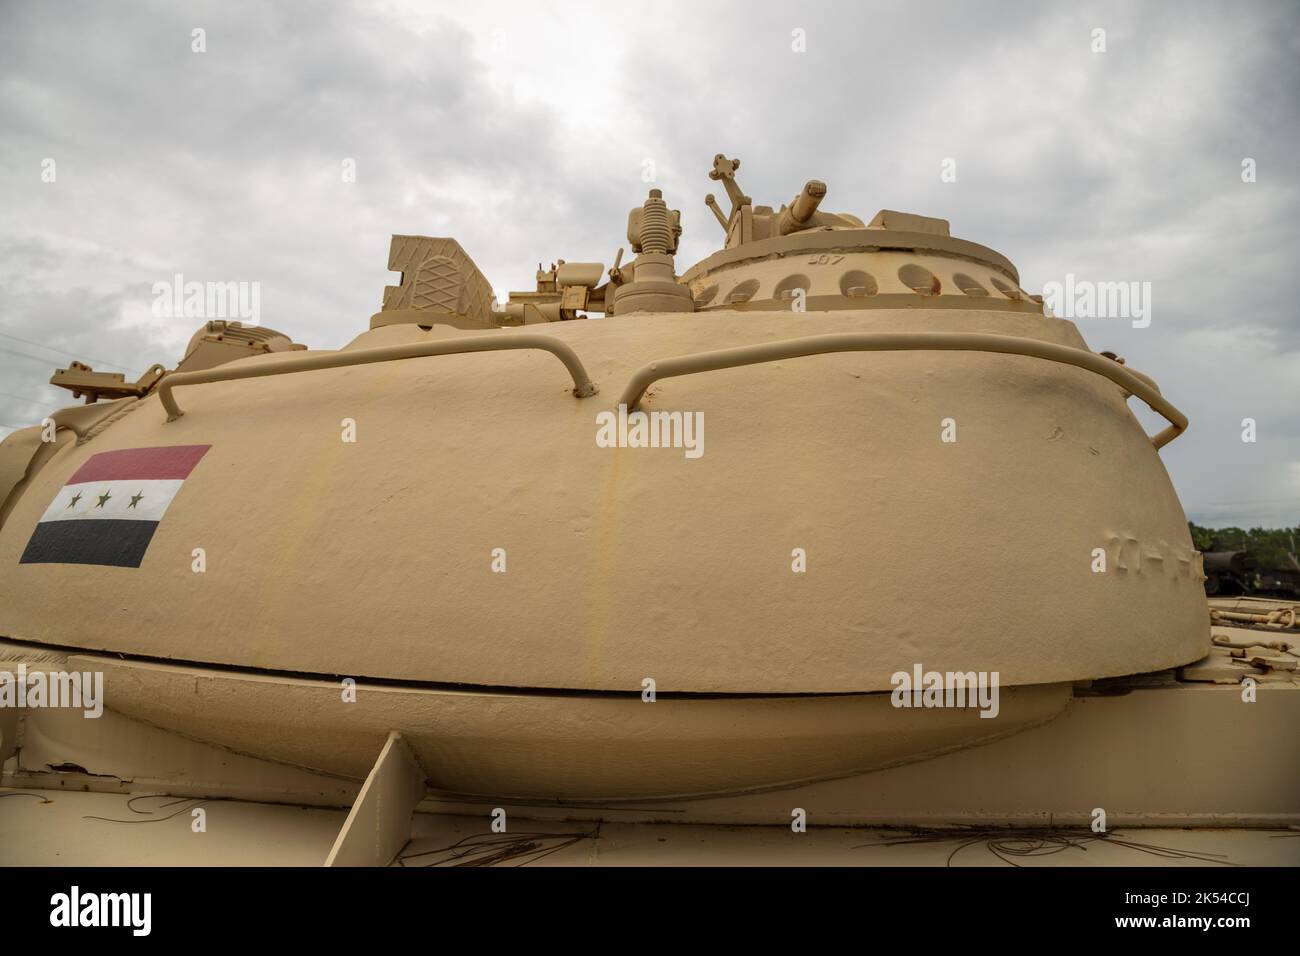 Iraqi Military Armored Vehicles Stock Photo